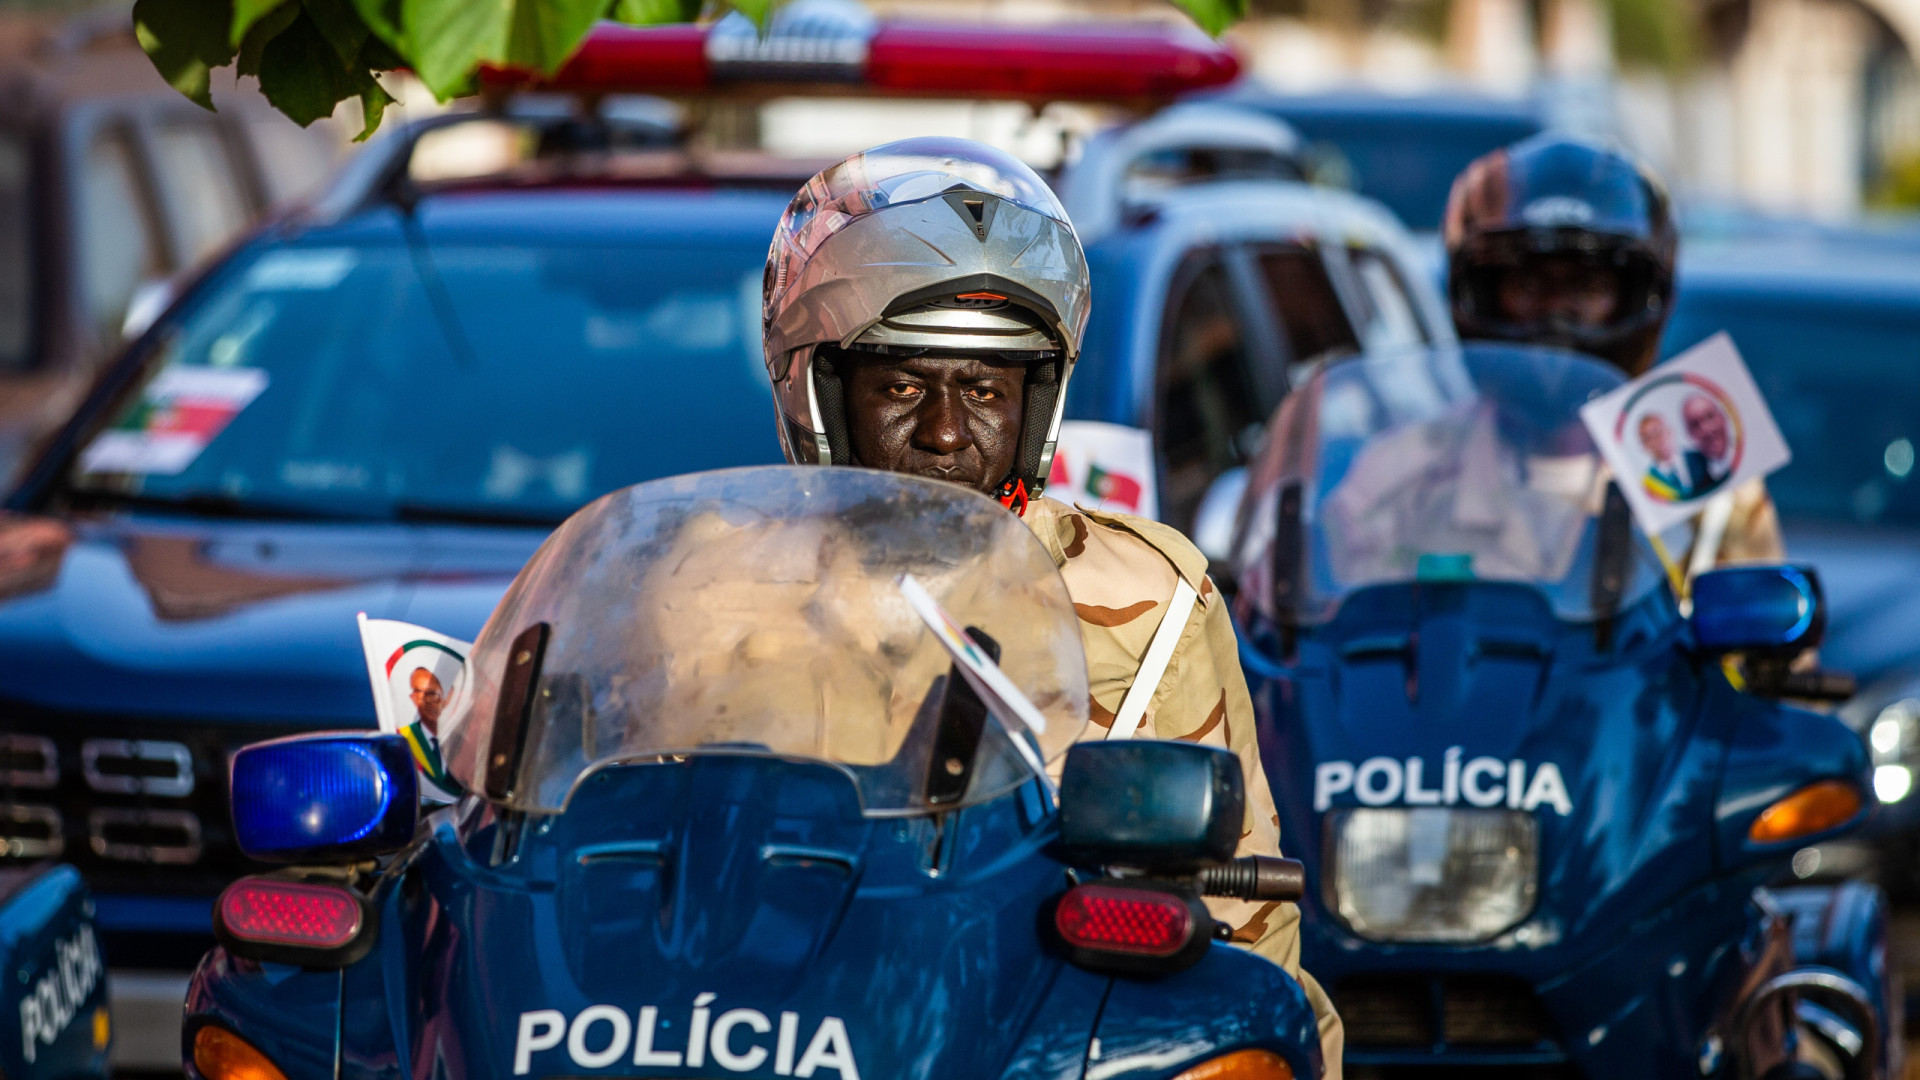 Polícia na rua sem manifestações e sem internet na Guiné-Bissau